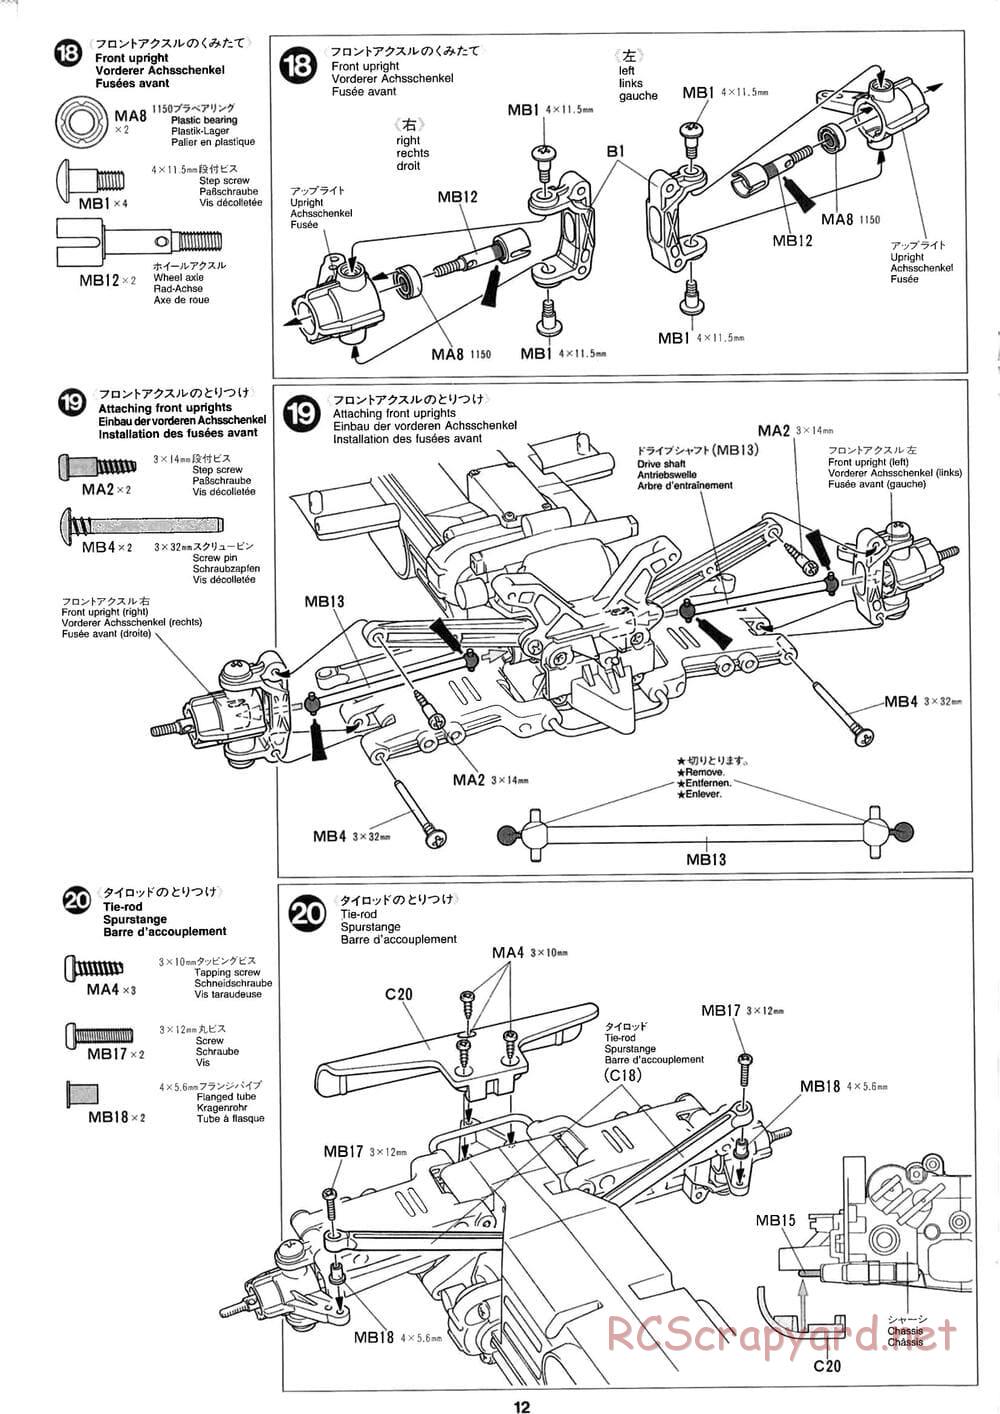 Tamiya - Baja Champ - TL-01B Chassis - Manual - Page 12